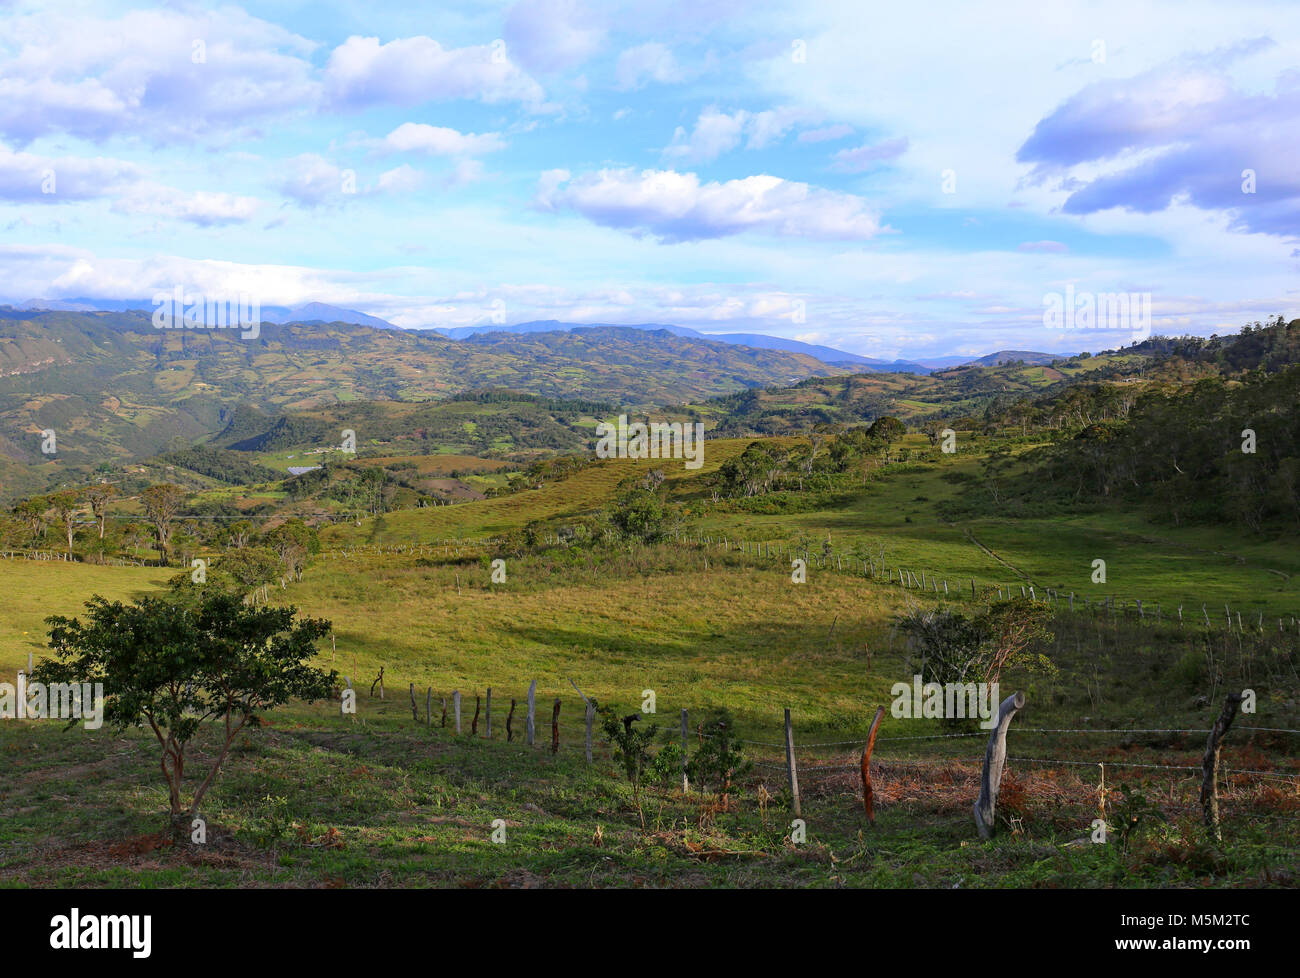 Paysage verdoyant avec des collines - paysage de la Colombie, en Amérique du Sud Banque D'Images